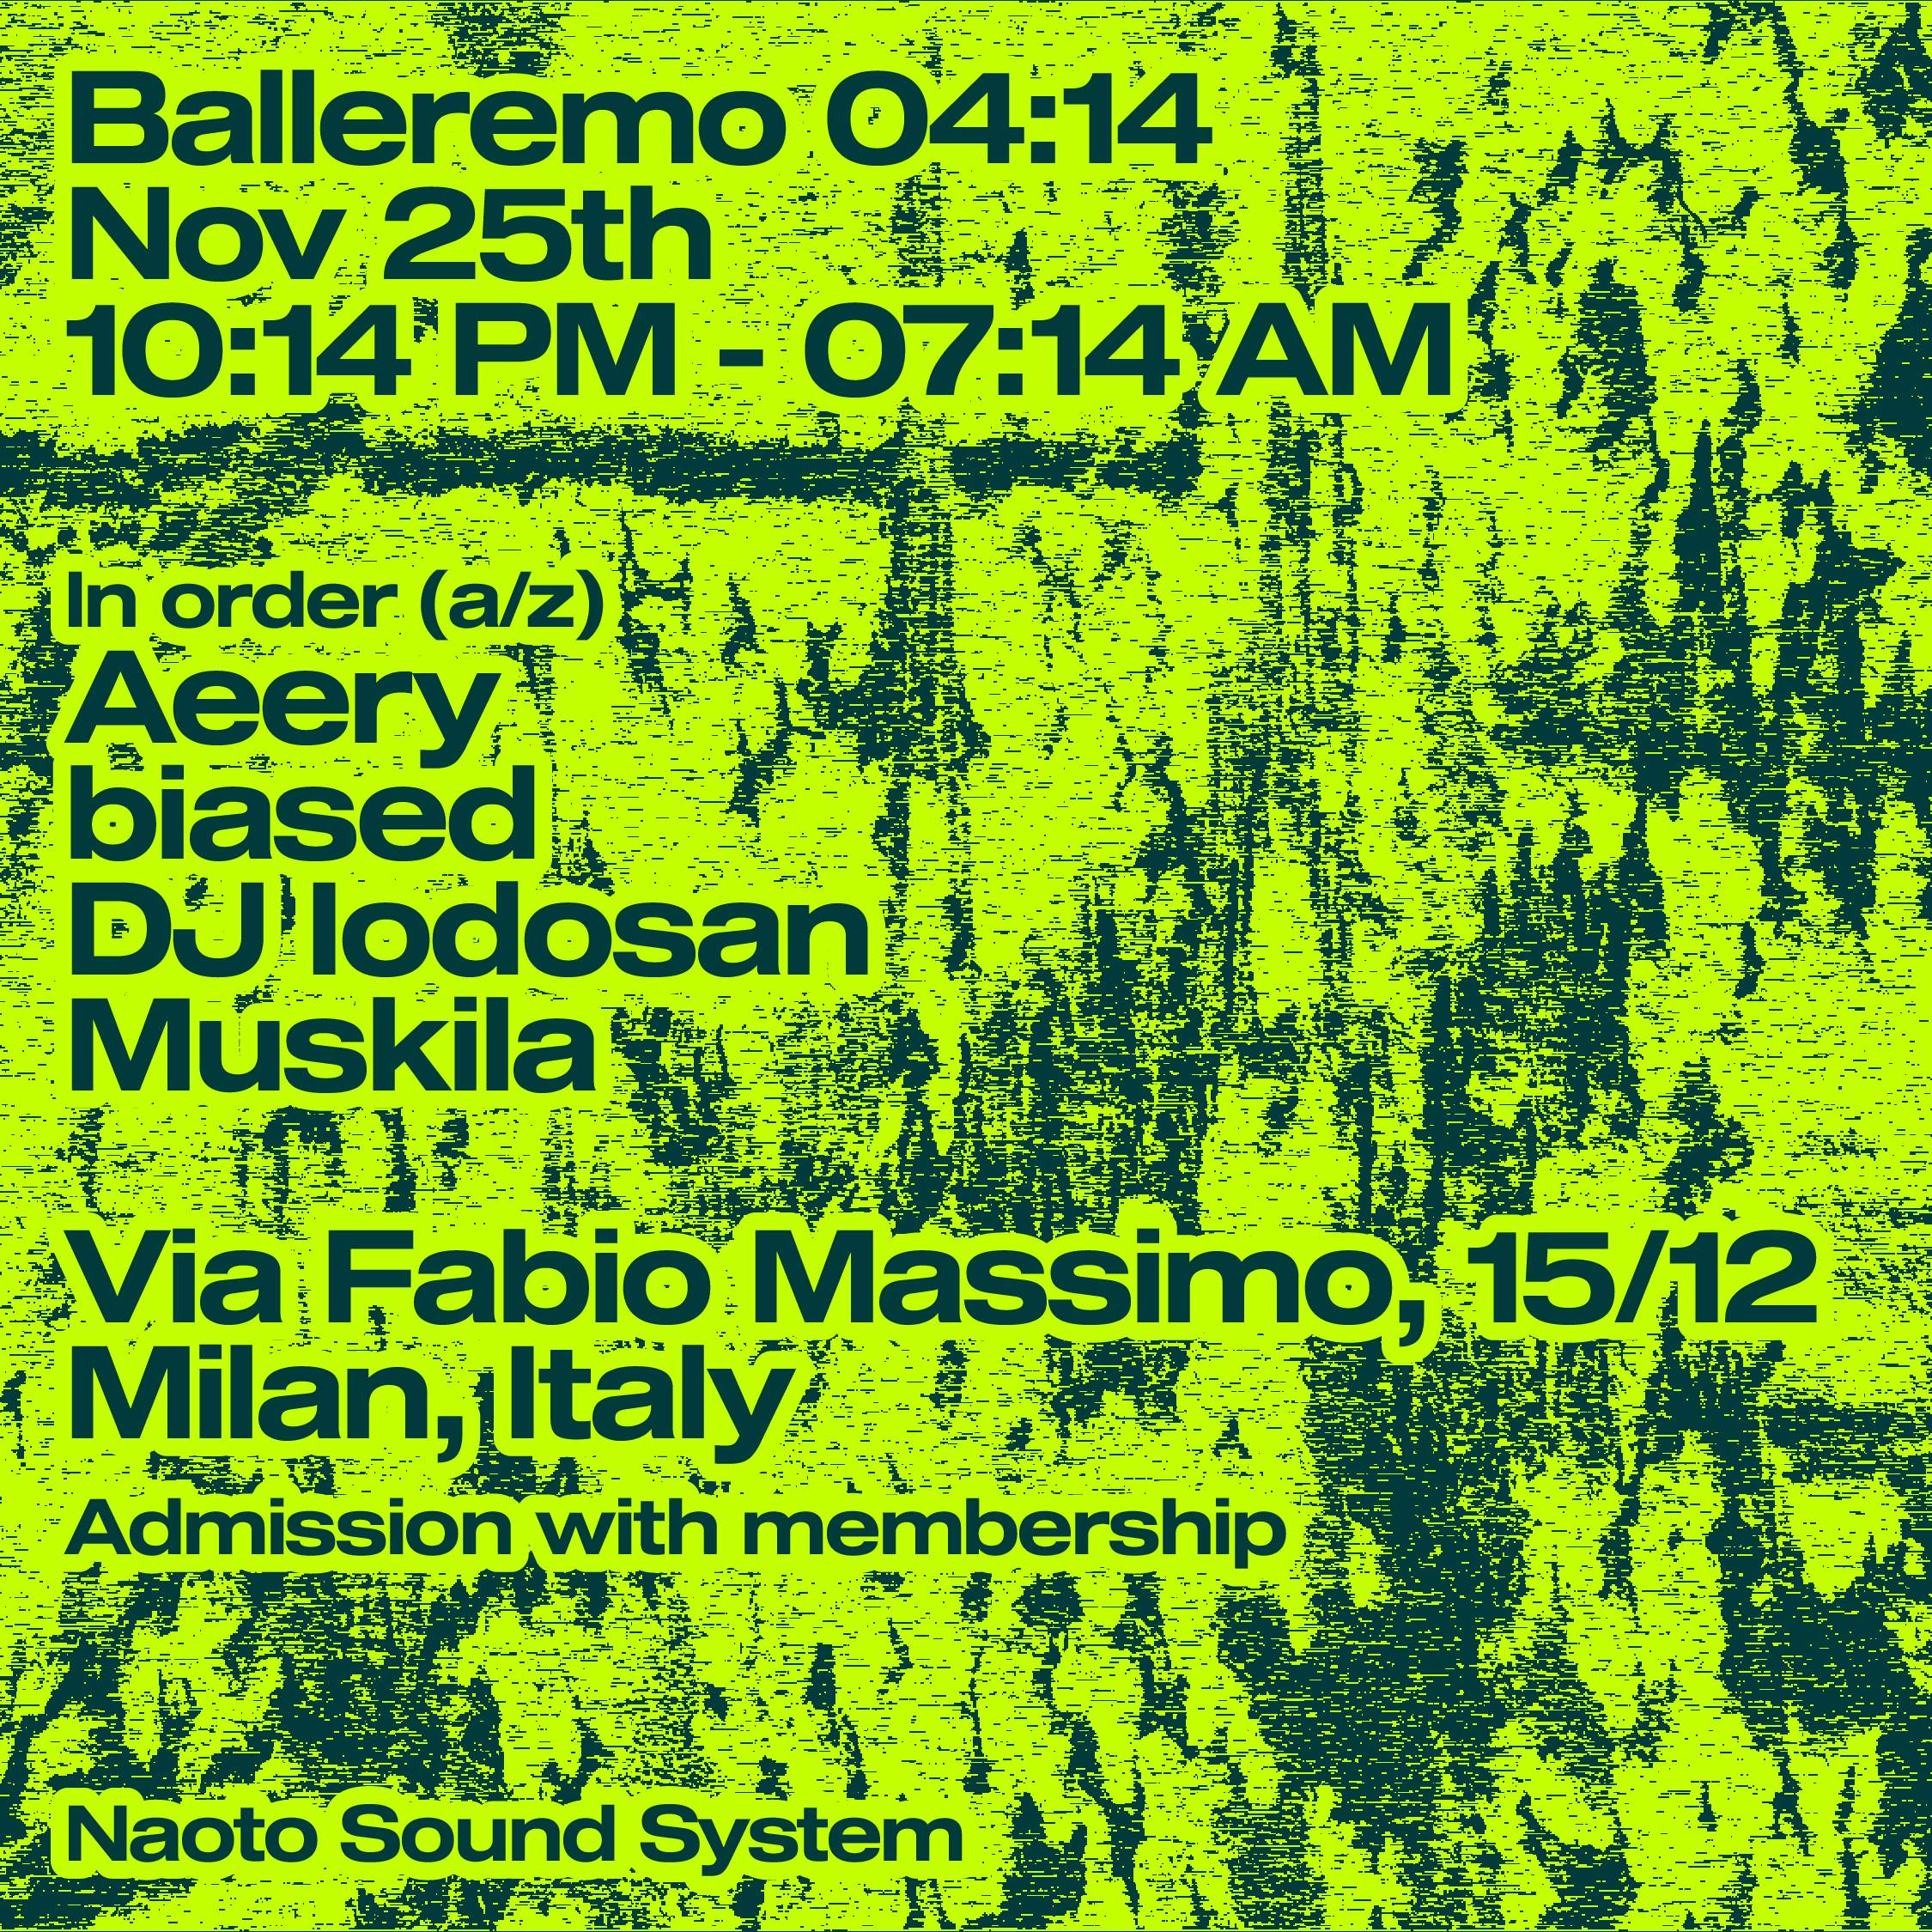 Balleremo 04:14 with Muskila, DJ Iodosan, Aeery, biased - Página frontal